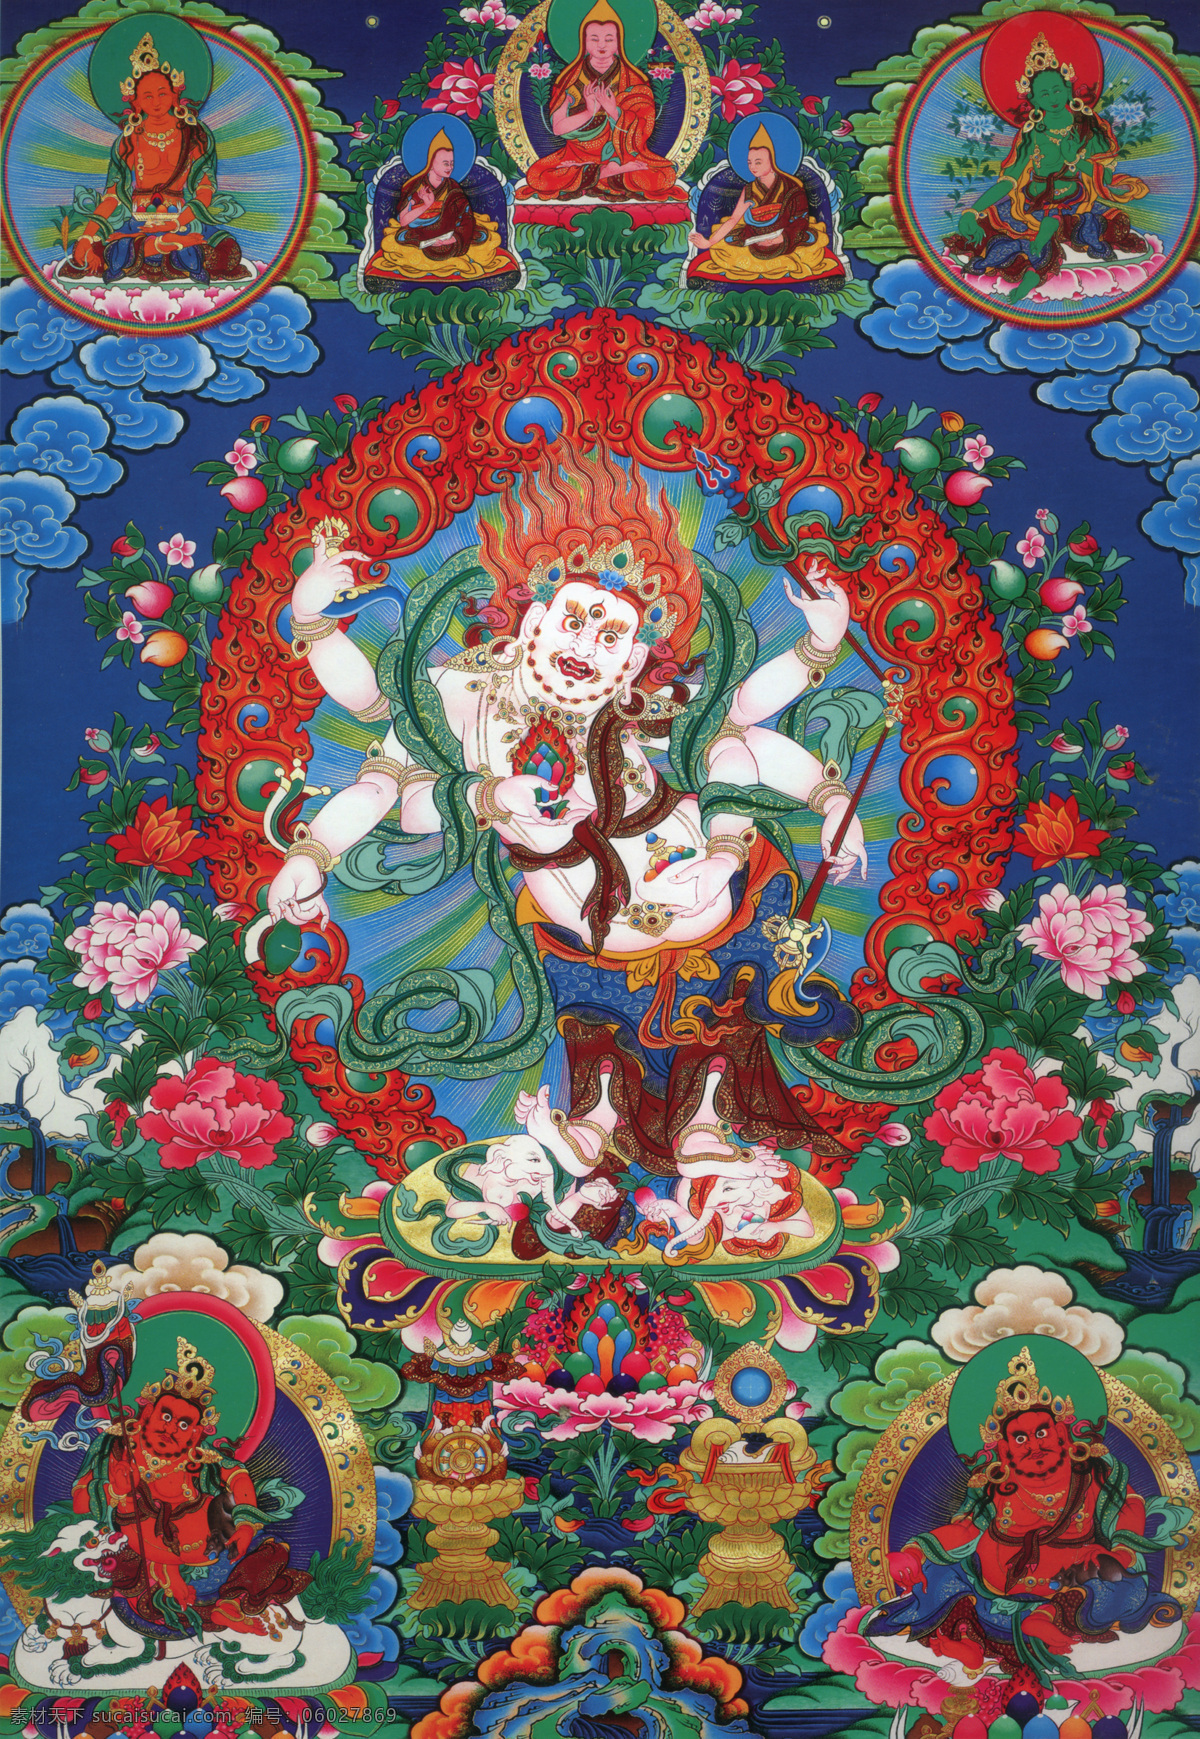 白 六 臂 玛 噶 拉 玛哈噶拉 白财神 财神 唐卡 密宗 佛 菩萨 藏传佛教 文化艺术 宗教信仰